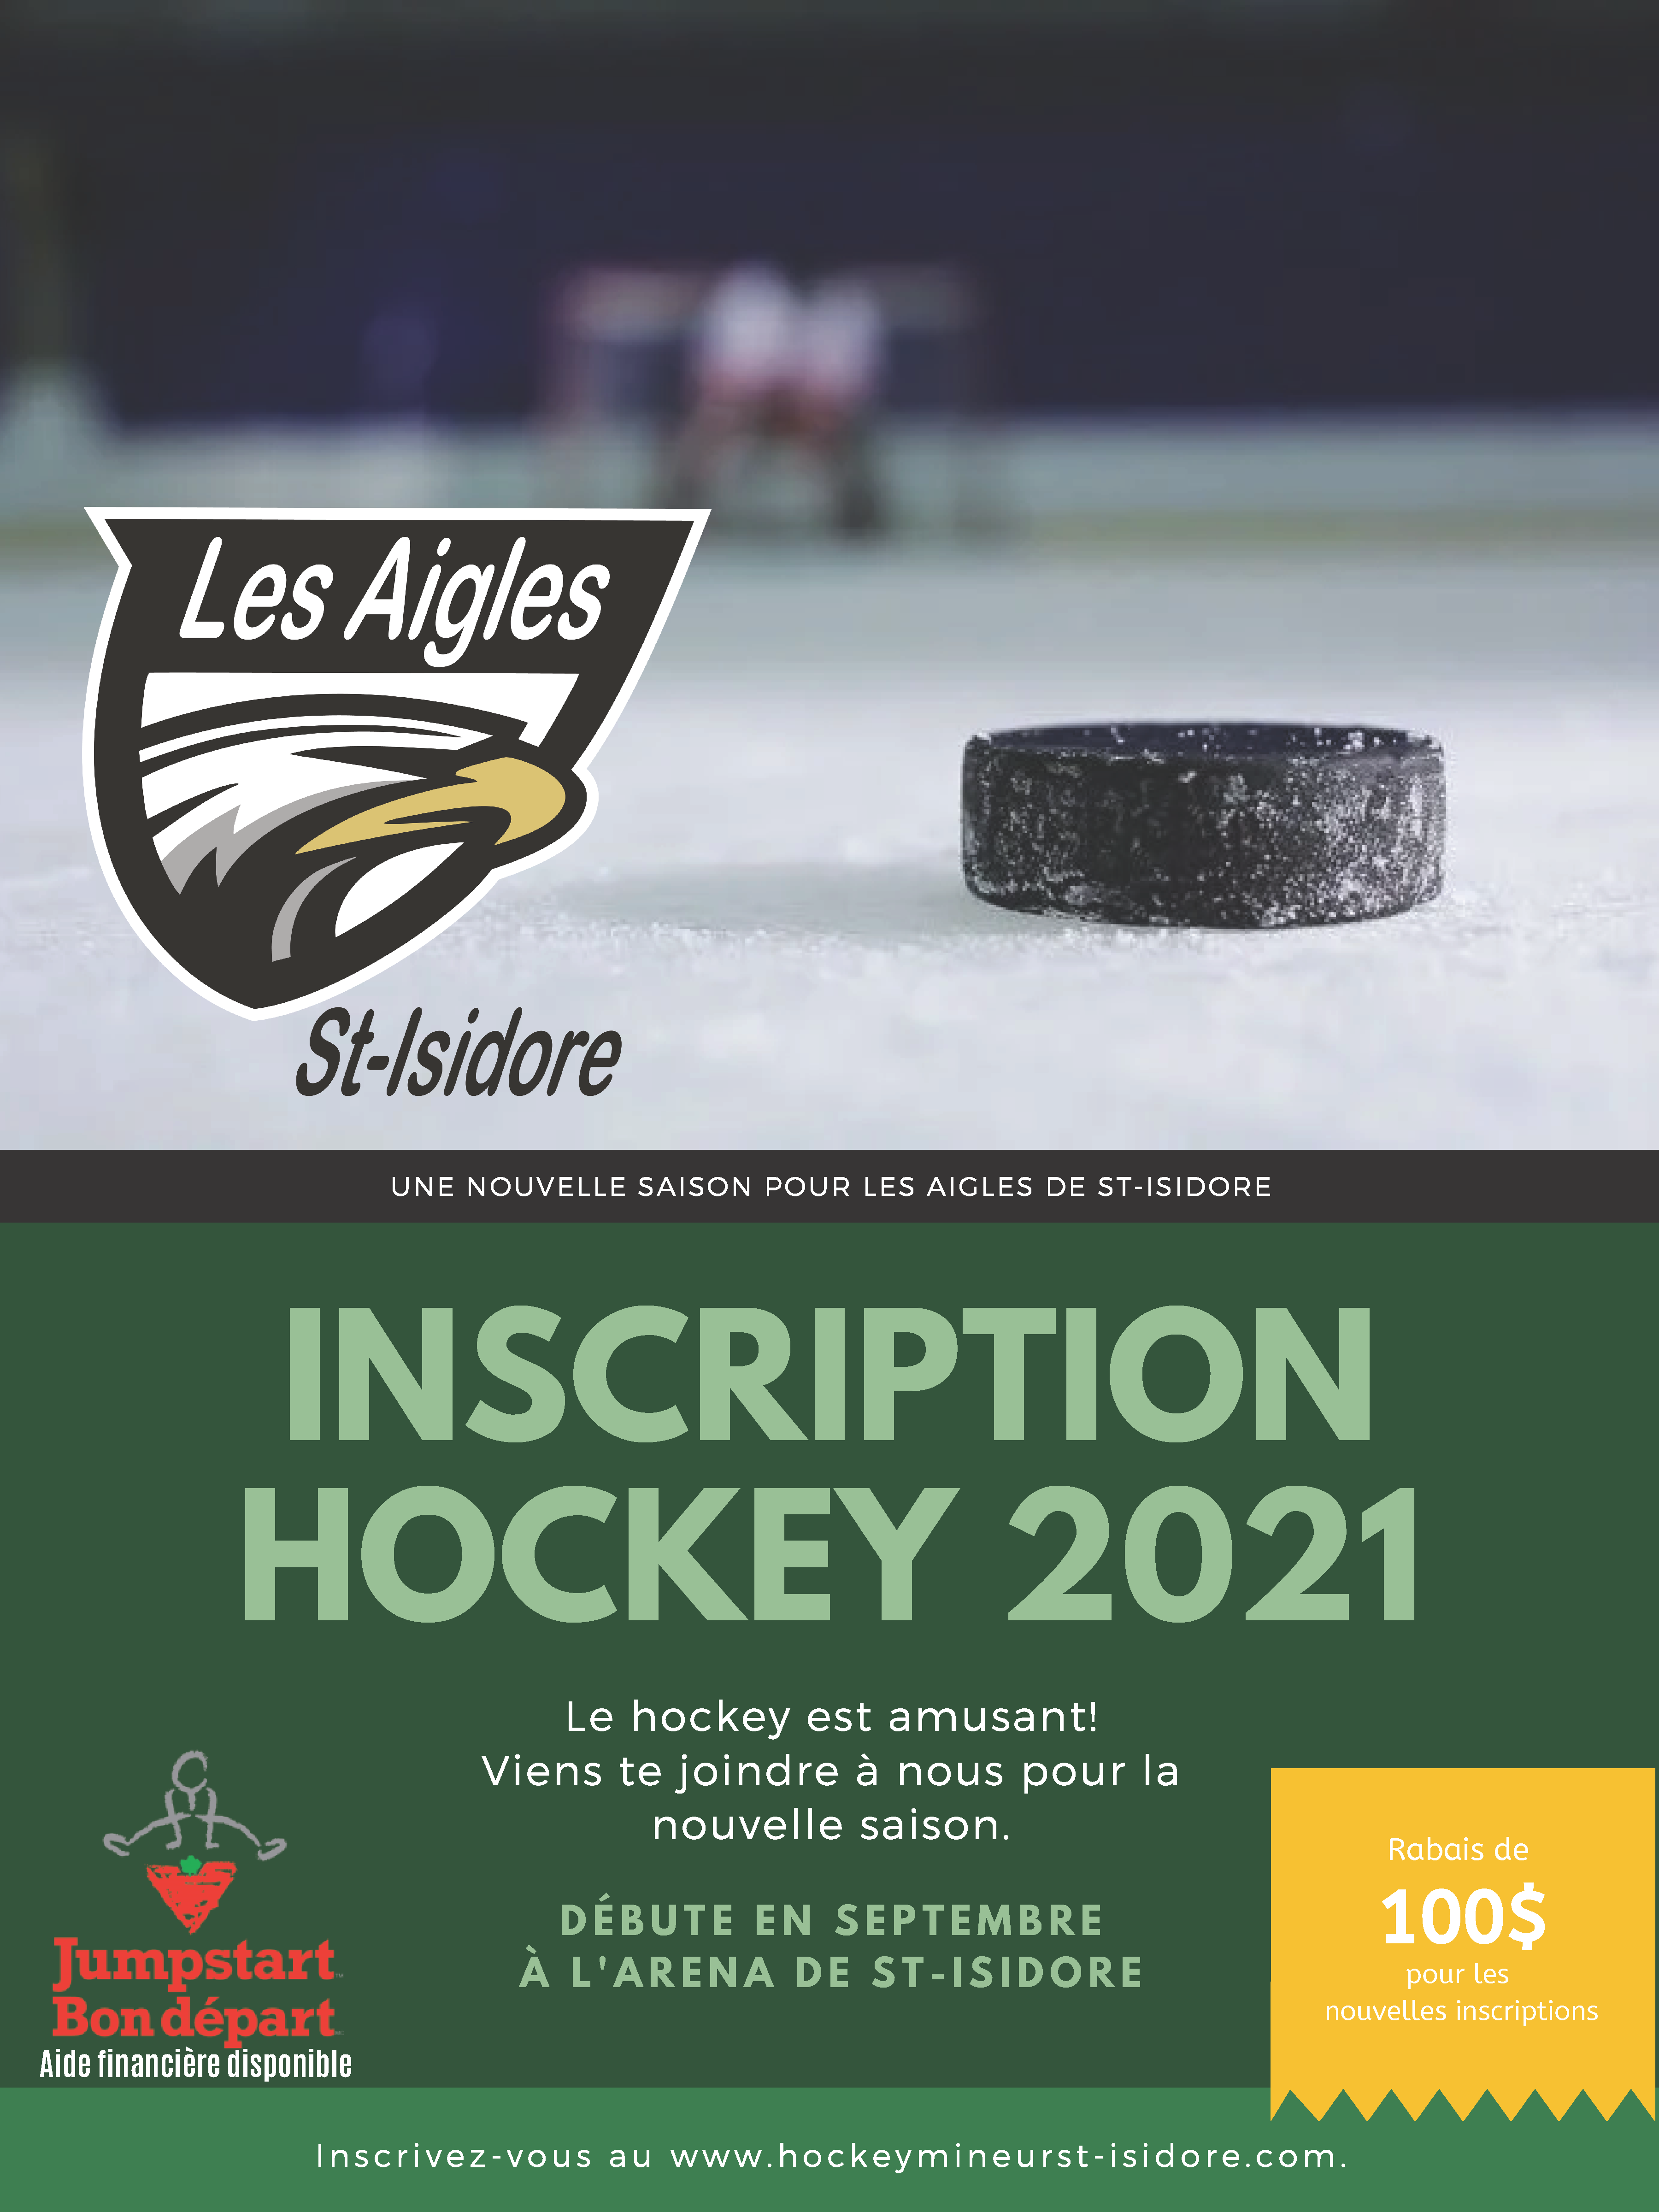 Inscriptions pour la saison hockey 2021 commence maintenant. Inscrivez-vous au www.hockeymineurst-isidore.com